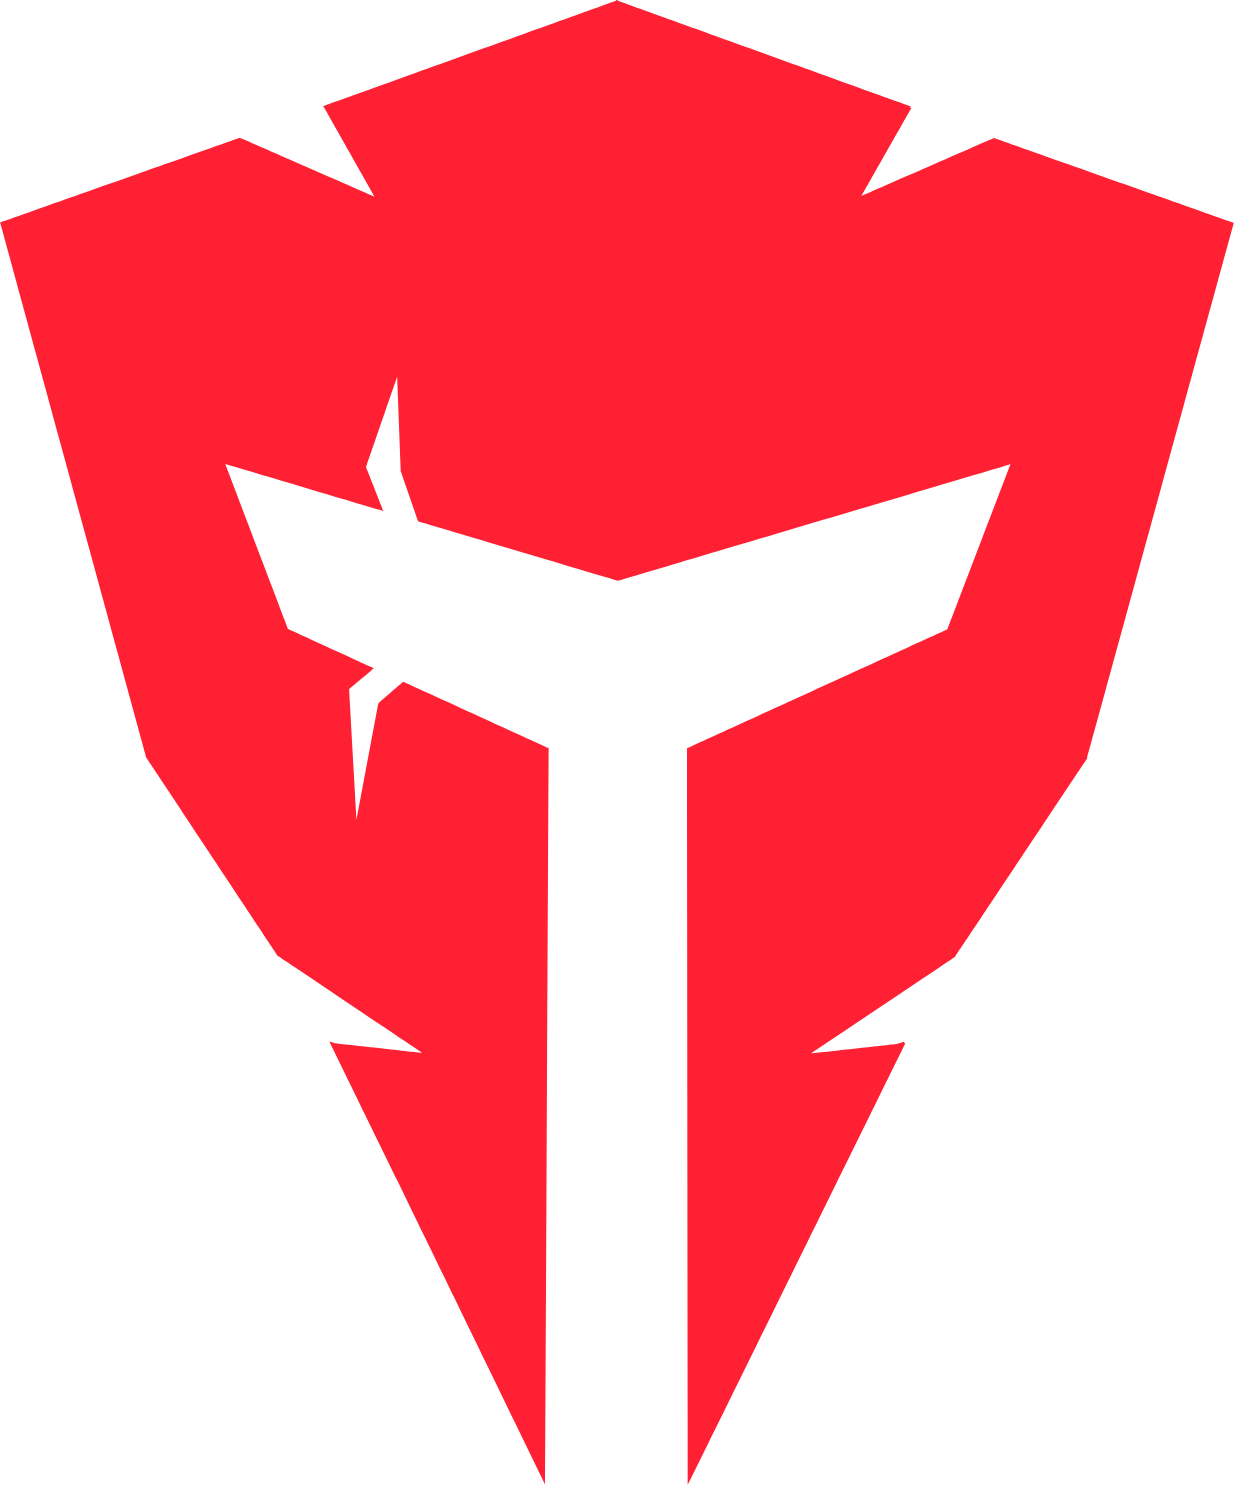 LeetDesk is officiële sponsor van esportsteam angry titans